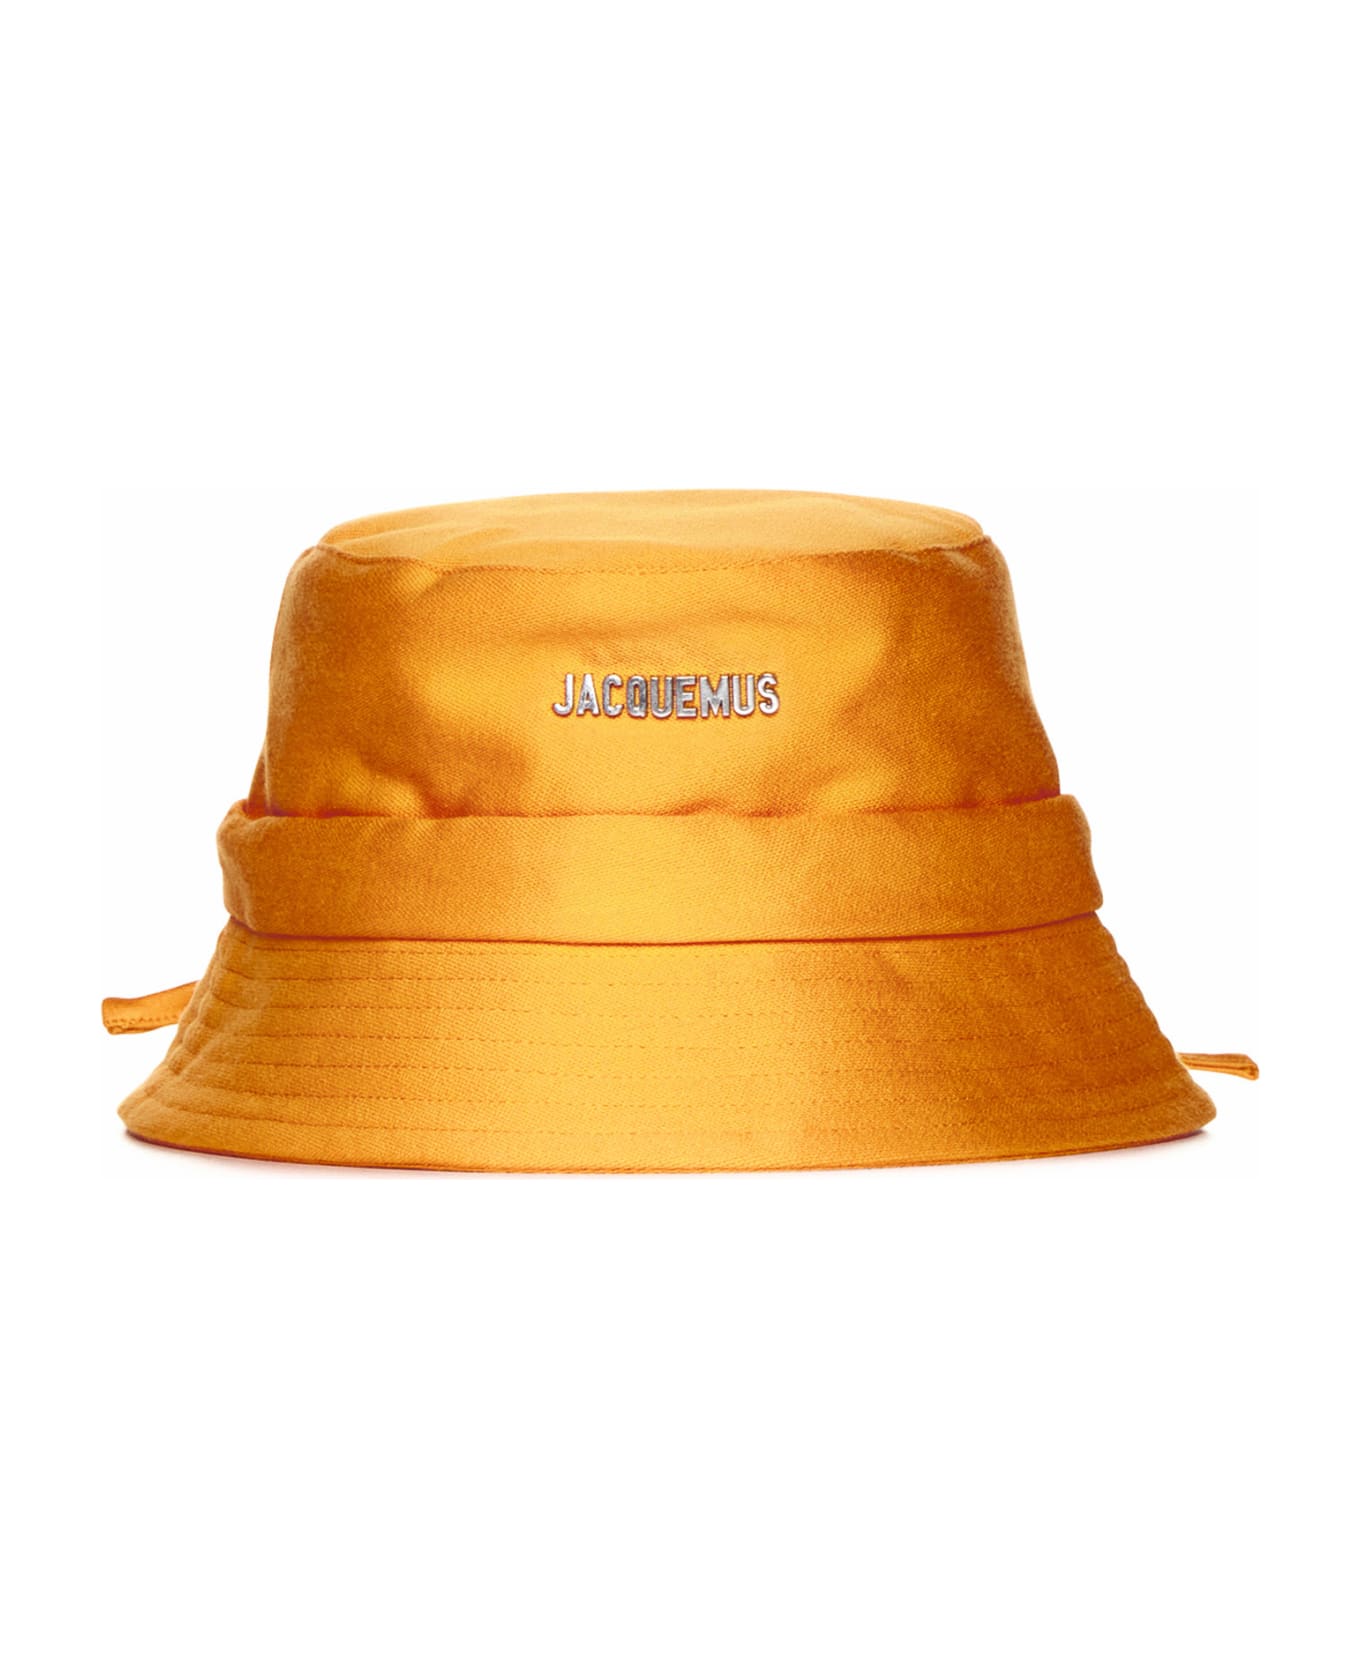 Jacquemus Hat - Dark orange